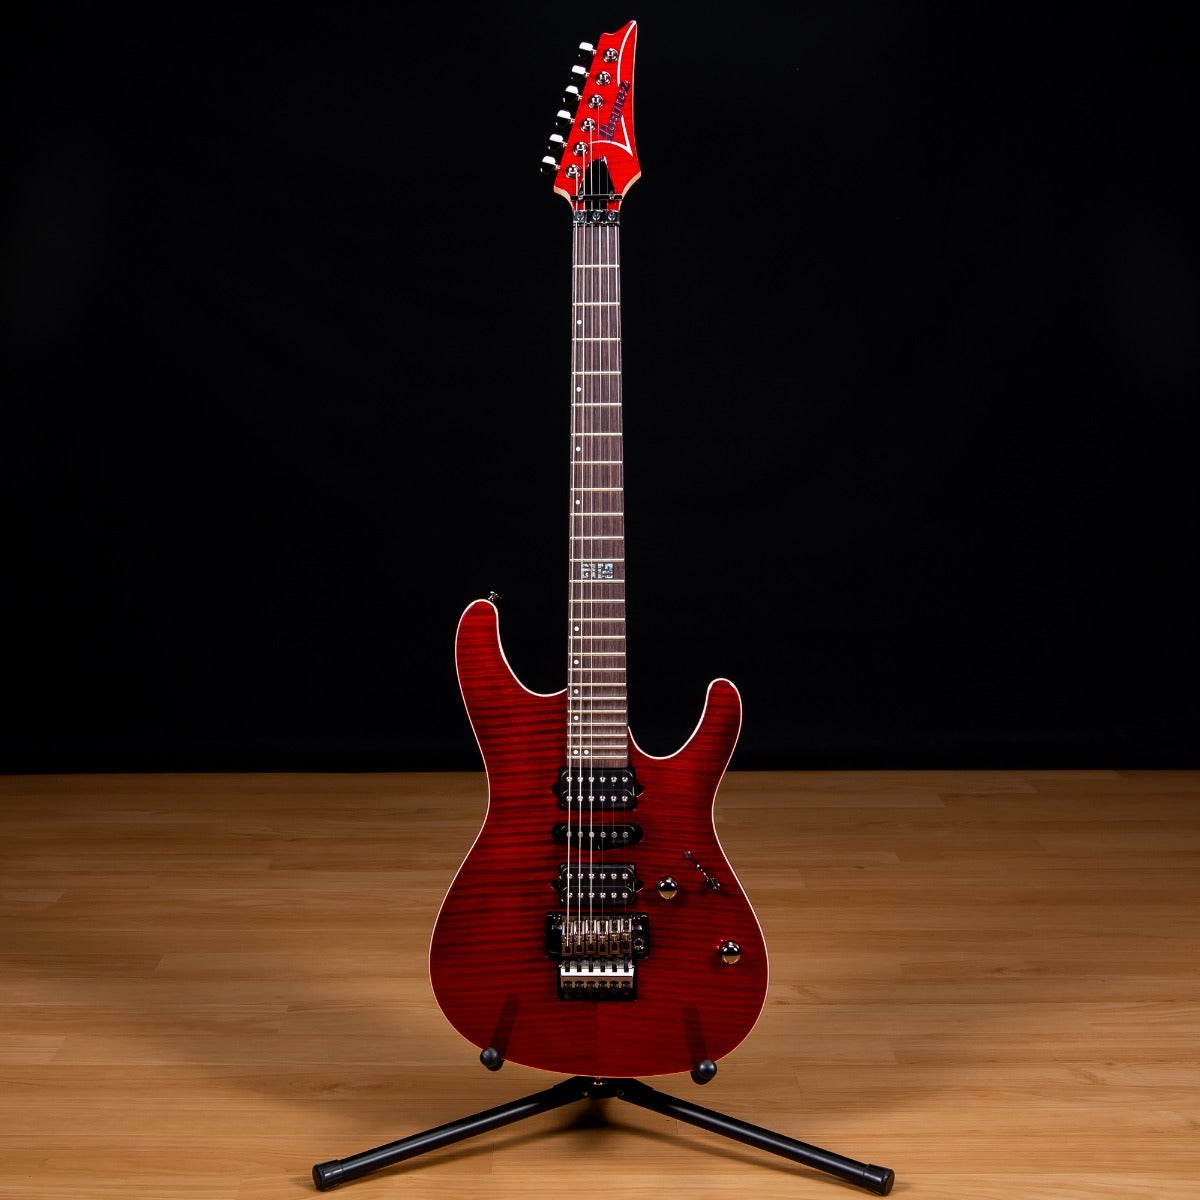 IBANEZ KIKO100 Kiko Loureiro Signature Electric Guitar - Transparent Ruby Red view 2